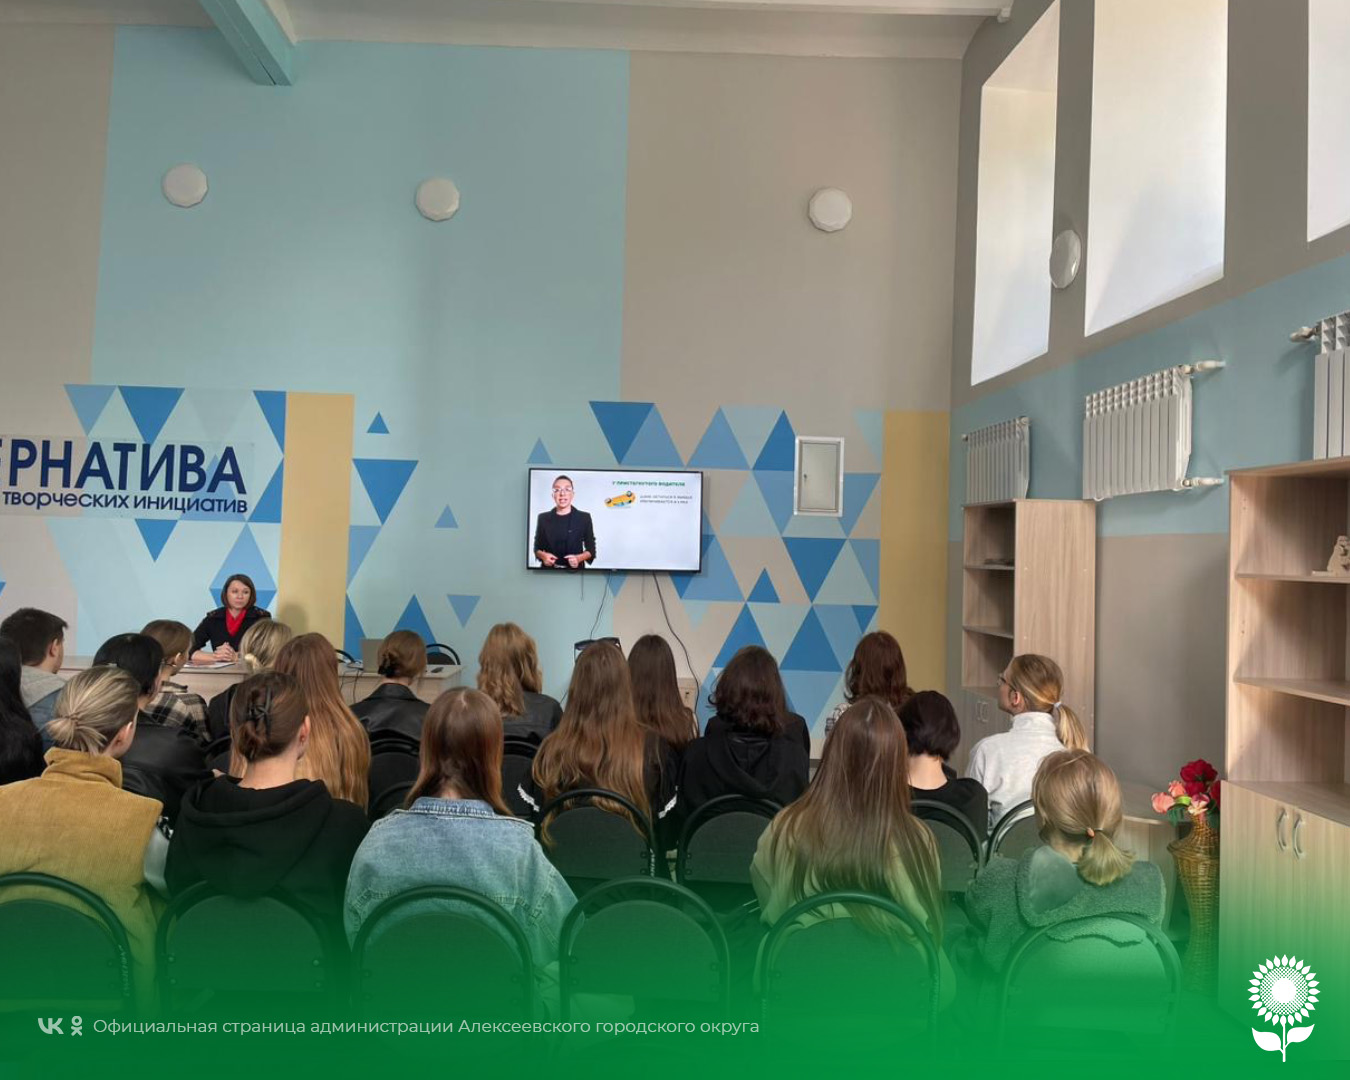 Сотрудники Госавтоинспекции ОМВД России по Алексеевскому городскому округу провели профилактическую встречу со студентами колледжа.